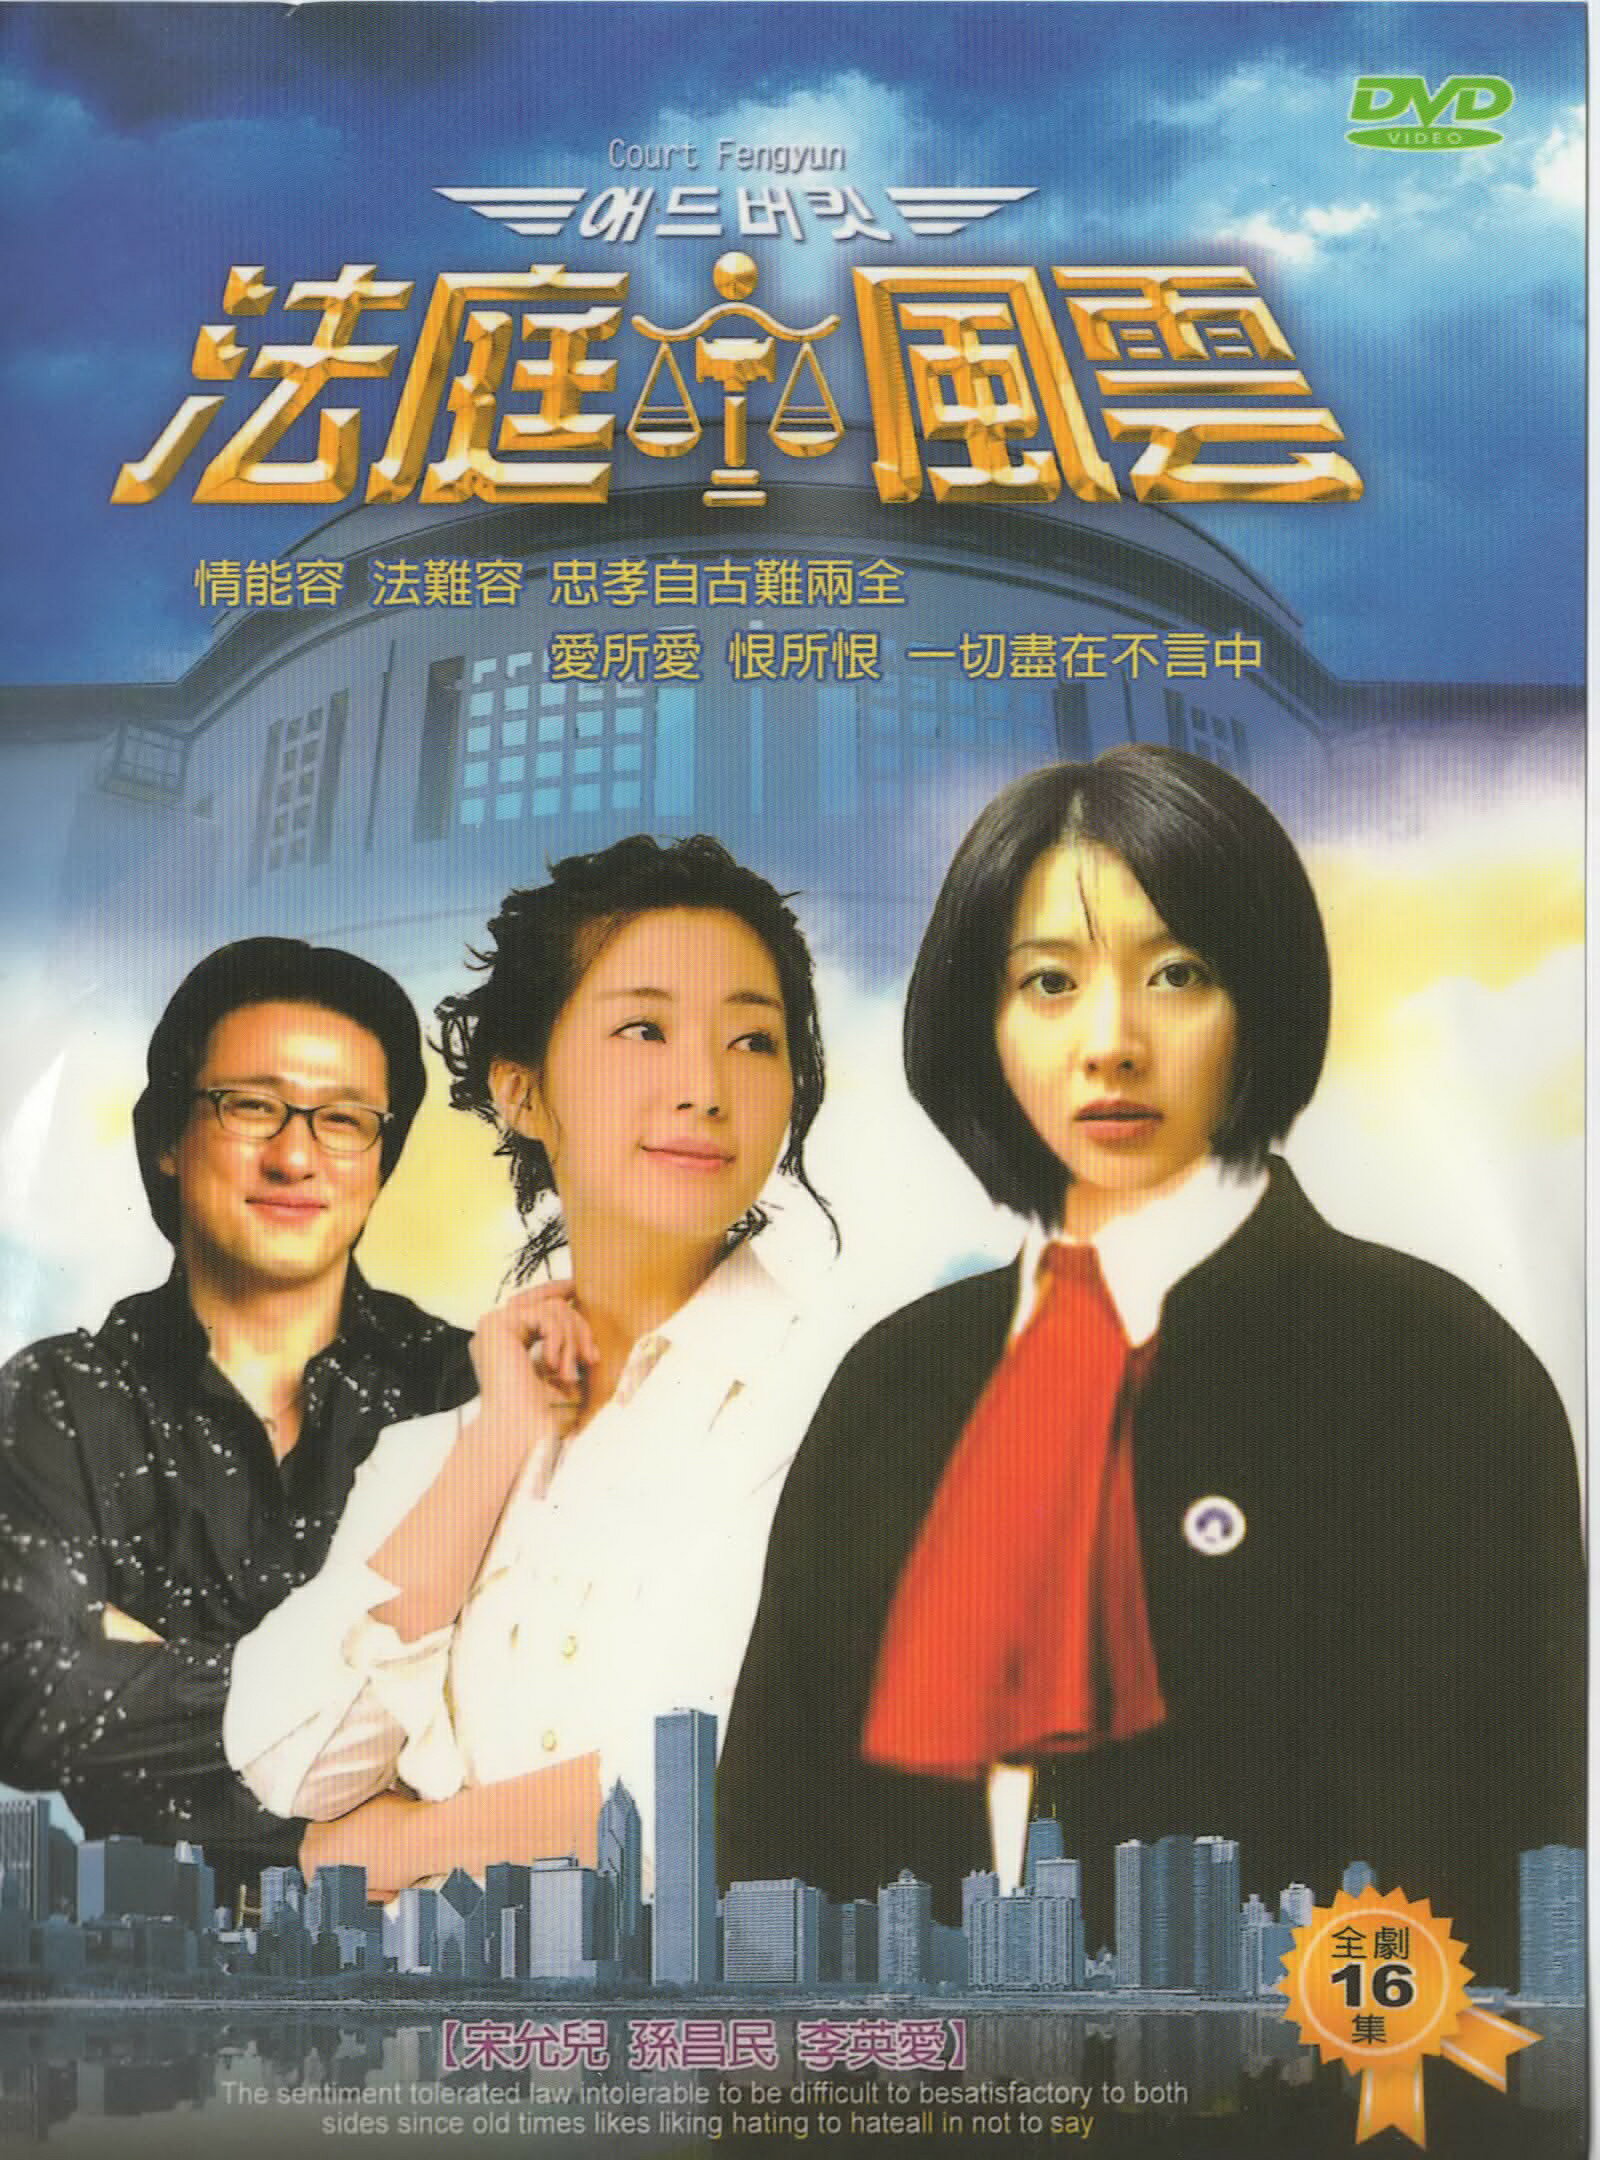 法庭風雲*DVD